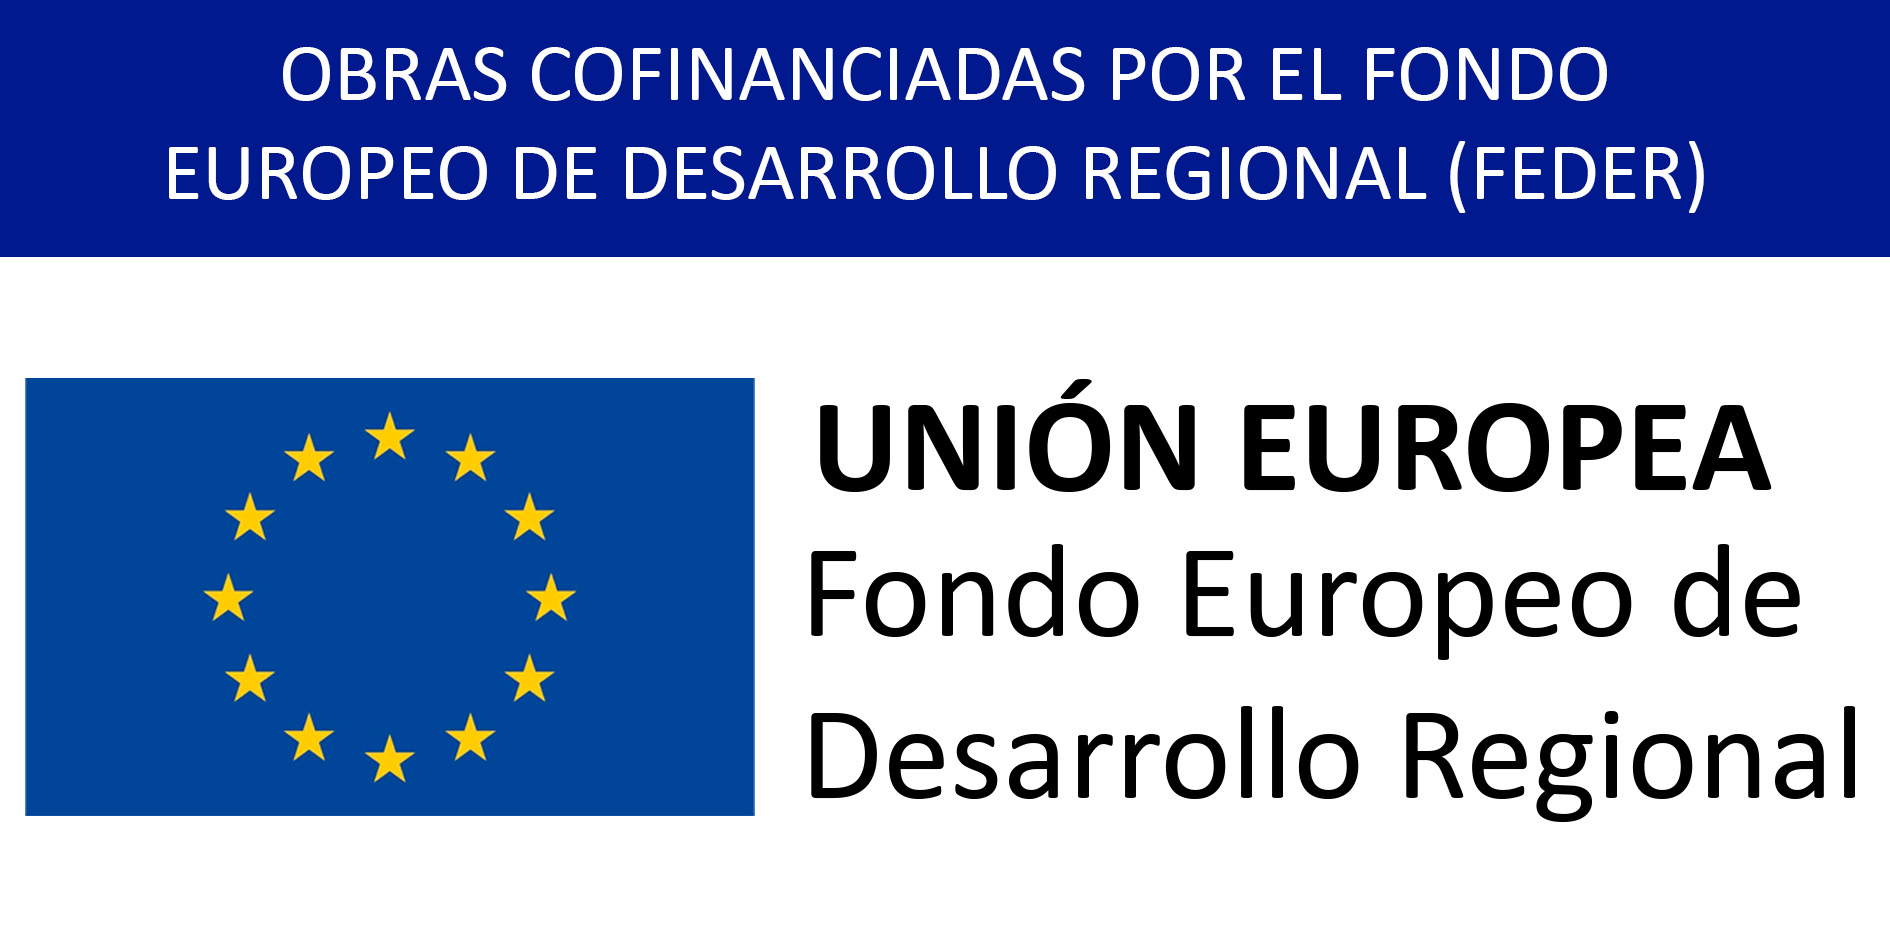 OBRAS COFINANCIADAS POR EL FONDO EUROPEO DE DESARROLLO REGIONAL (FEDER)